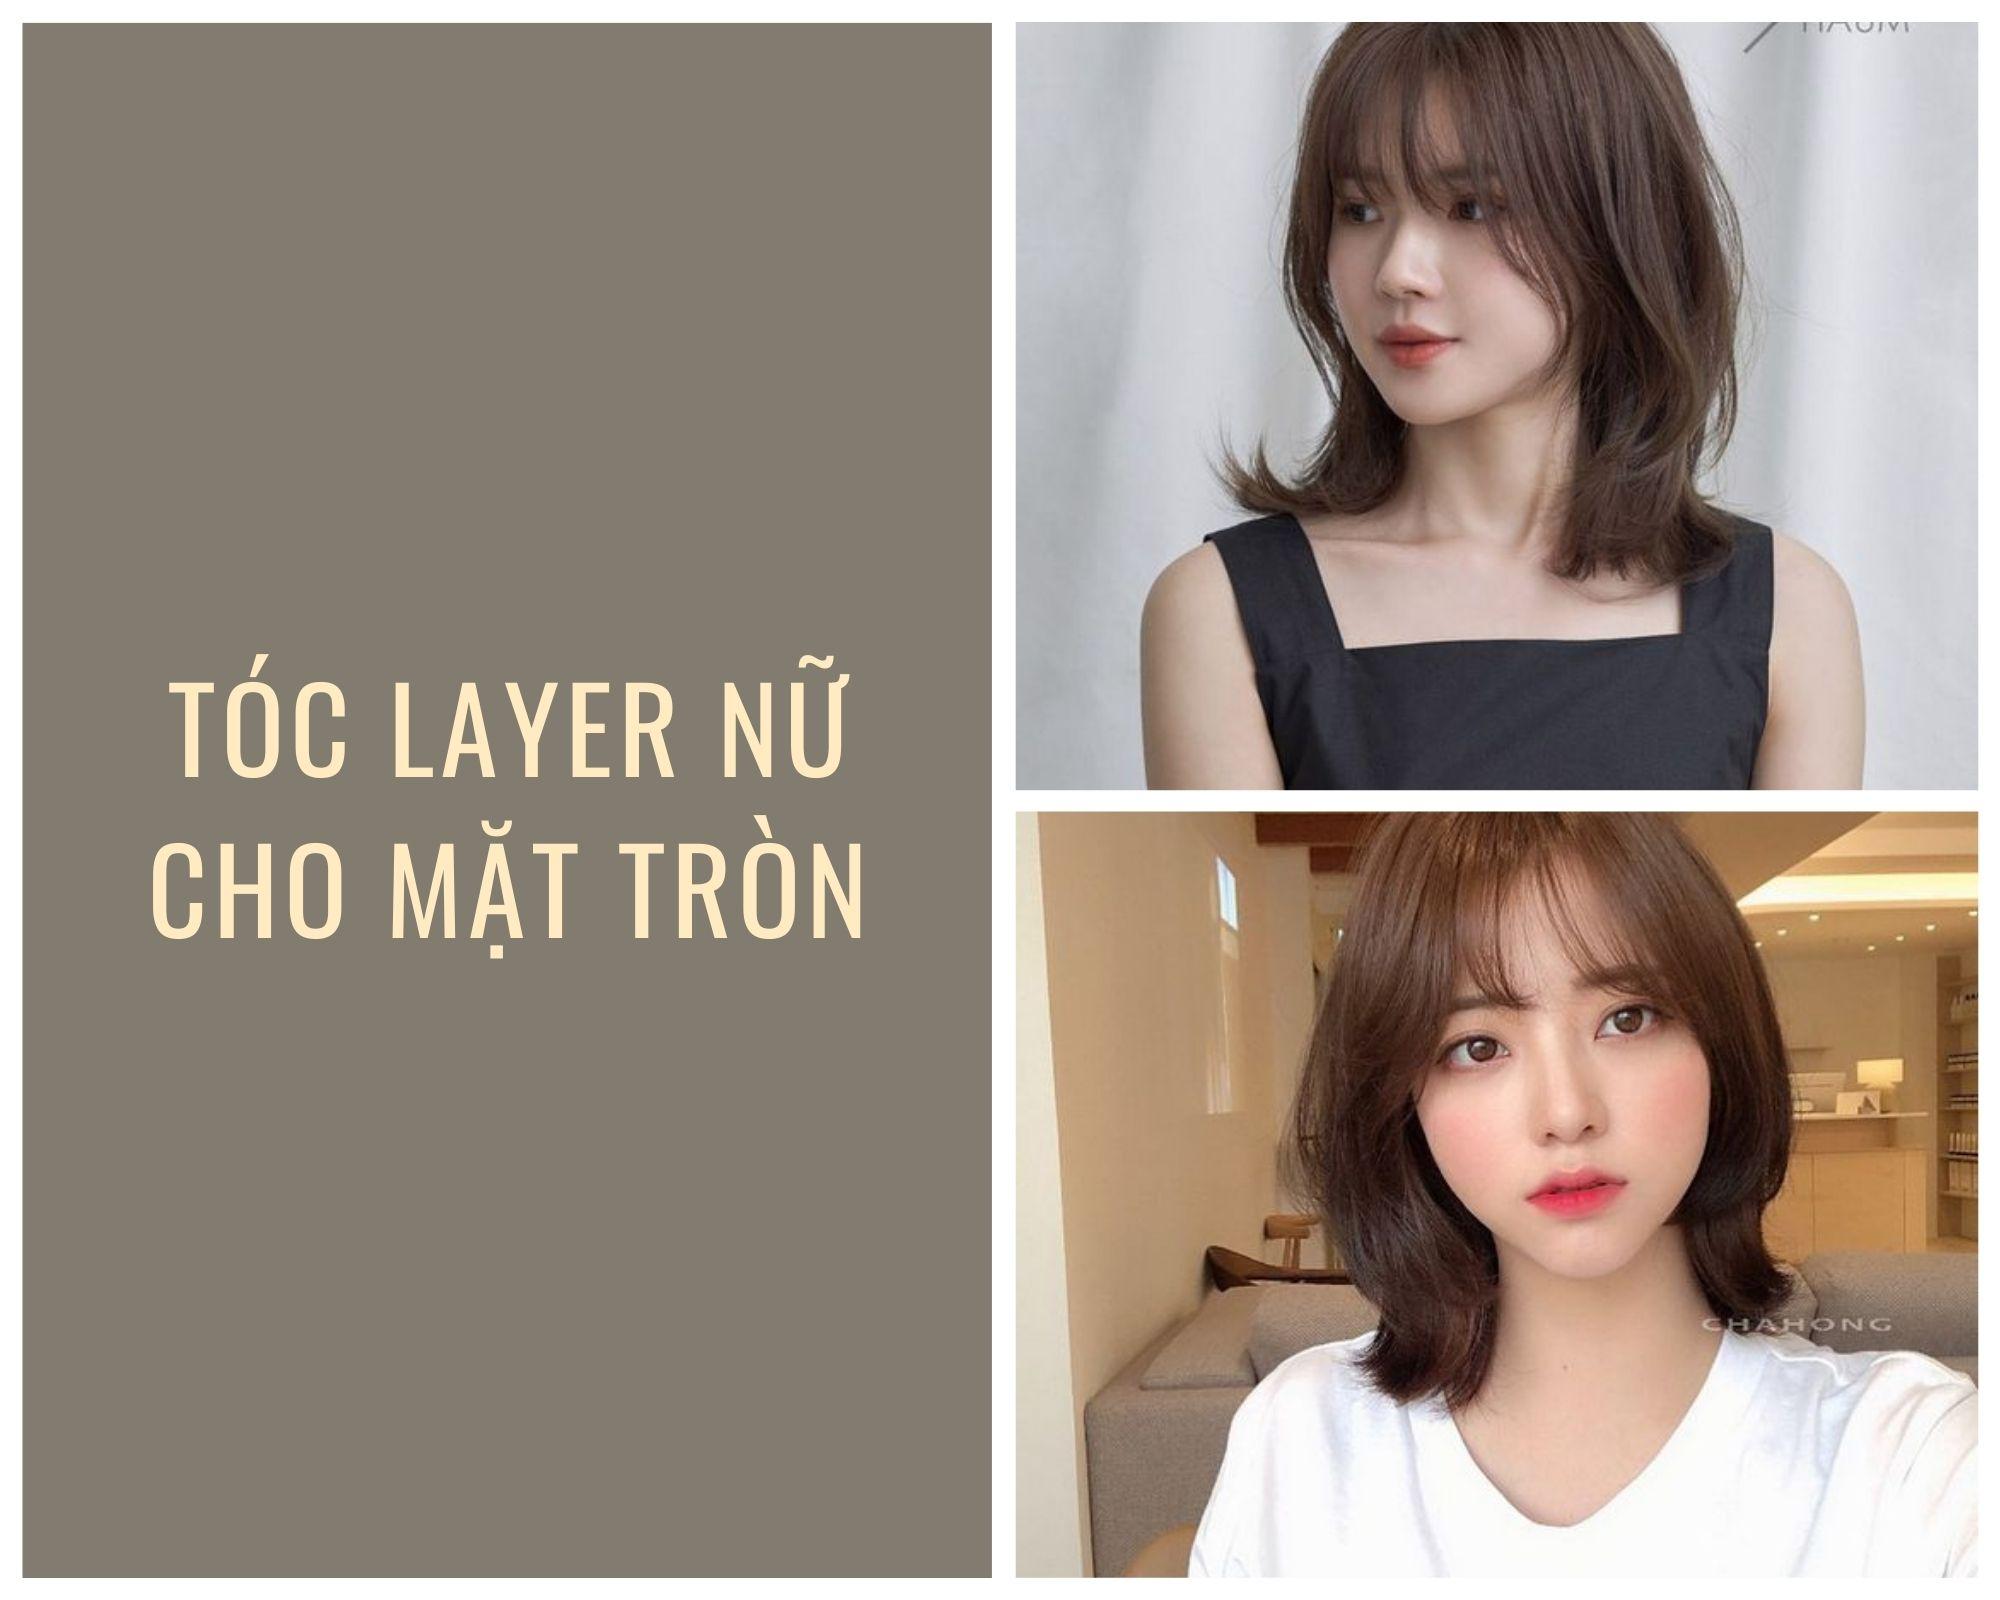 15 kiểu tóc uốn layer siêu đẹp được các chị em thích mê 2022